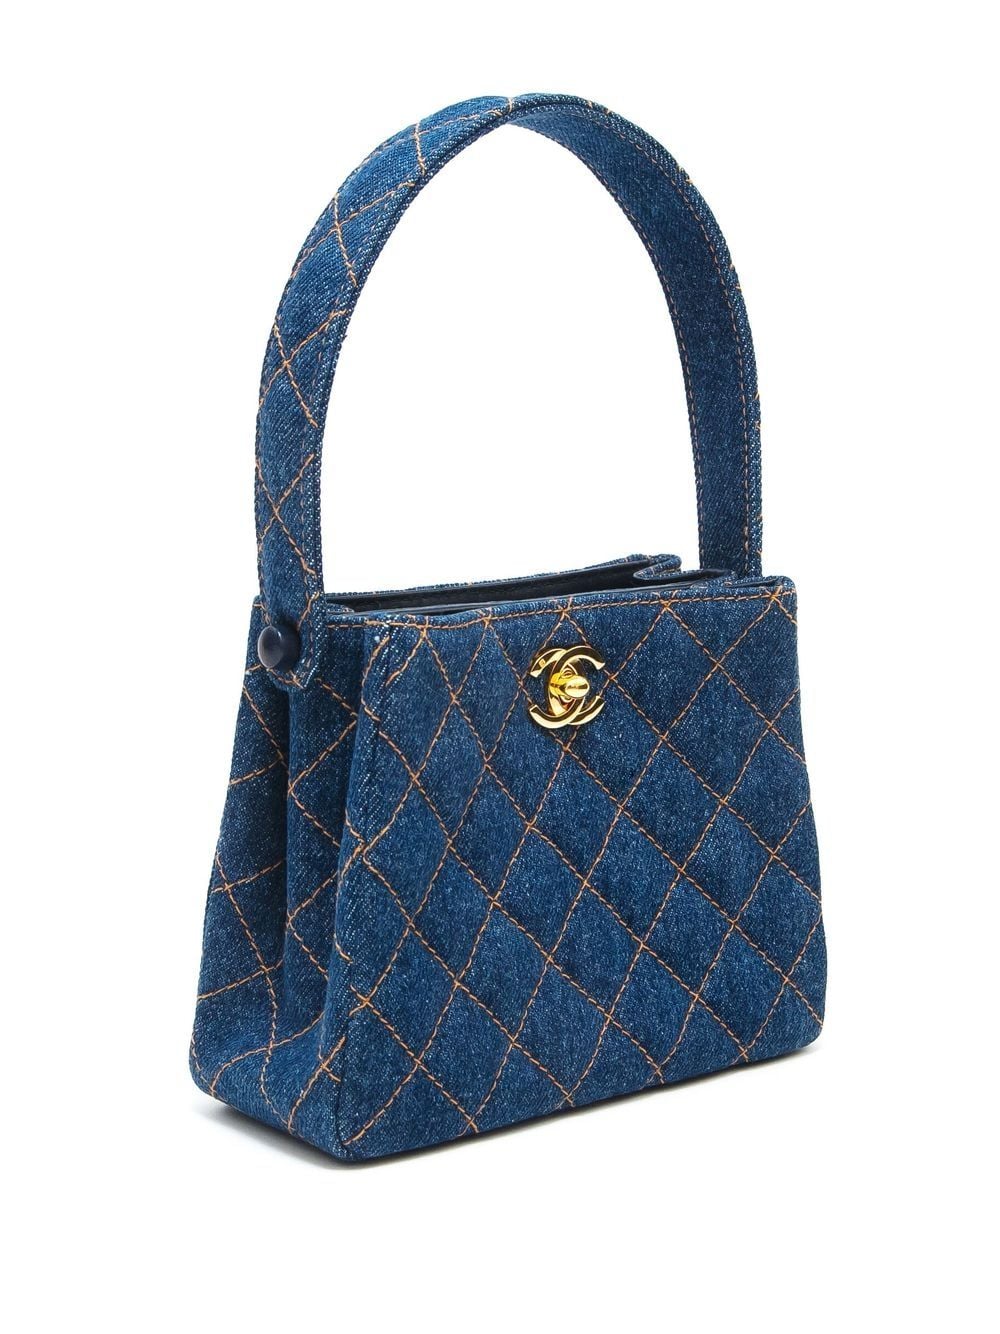 1950's Blue Vintage Handbag - Top-Handle Bag - Bobbie… - Gem